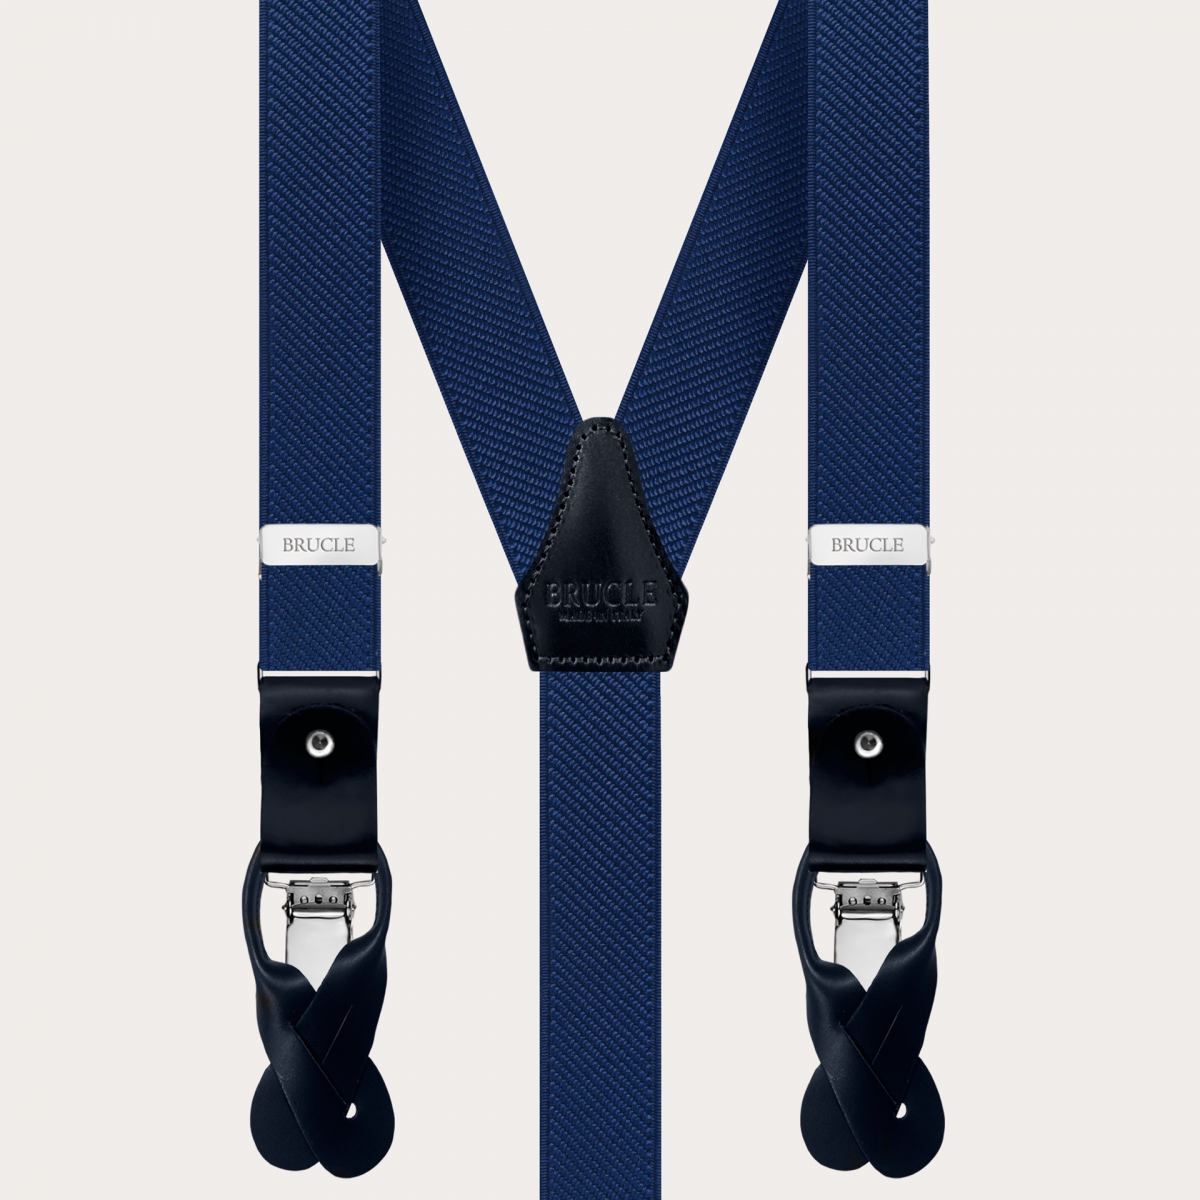 BRUCLE Elegant double use elastic suspenders, navy blue